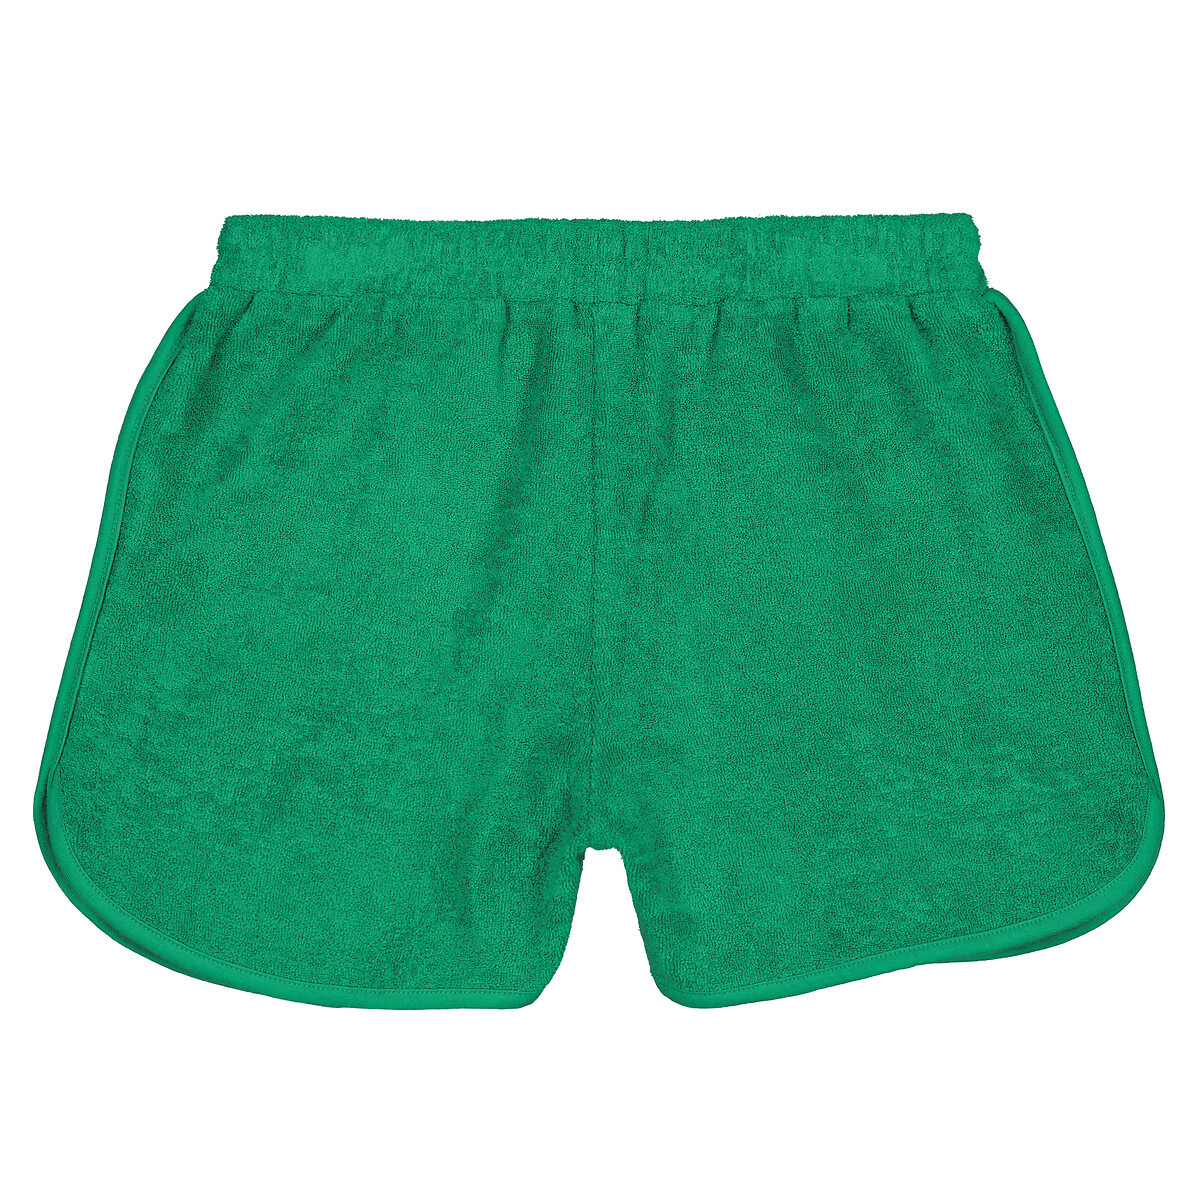 Шорты из махровой ткани  12 зеленый LaRedoute, размер 12 - фото 4